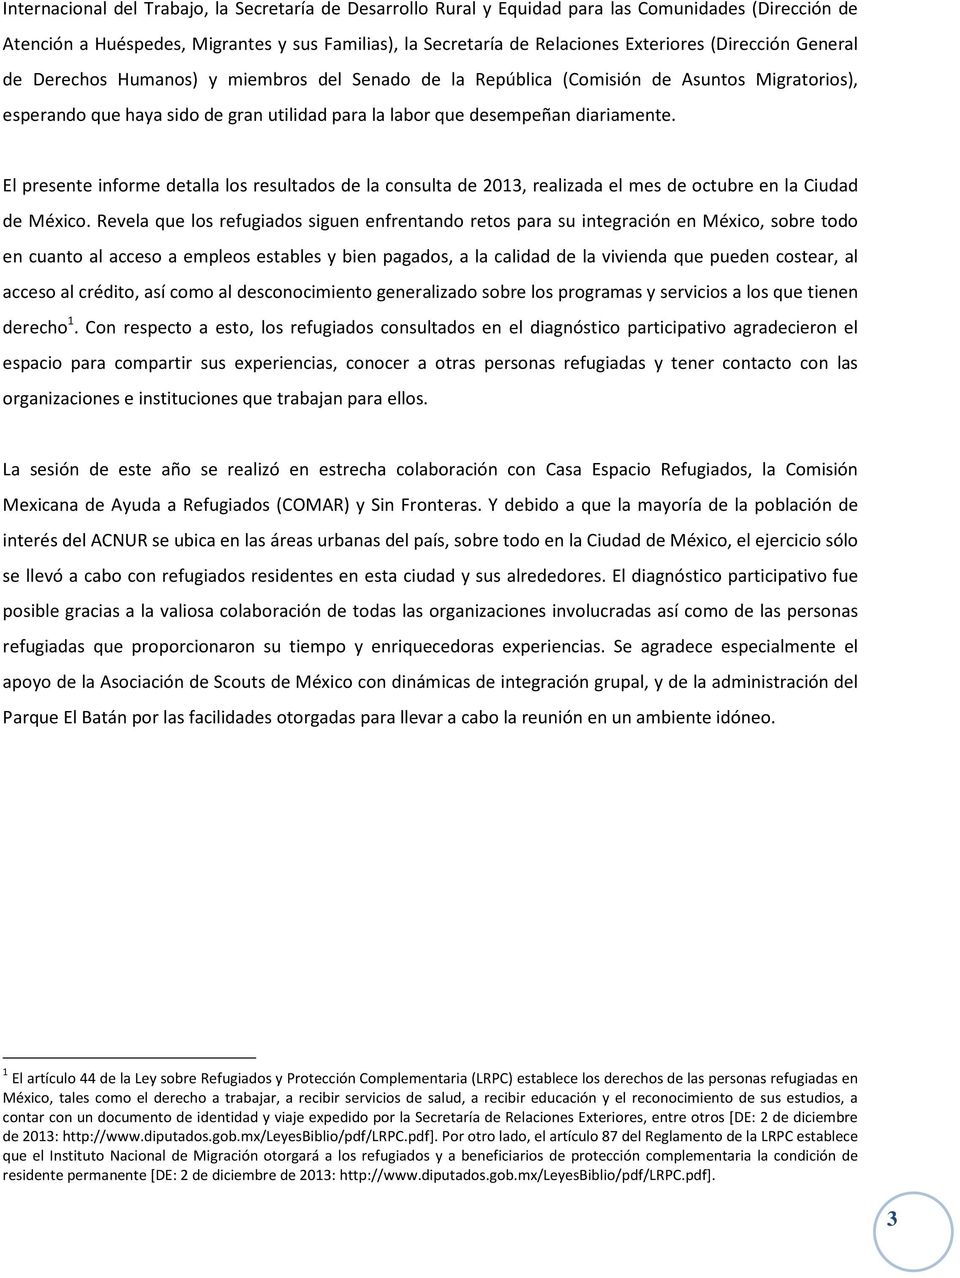 El presente informe detalla los resultados de la consulta de 2013, realizada el mes de octubre en la Ciudad de México.